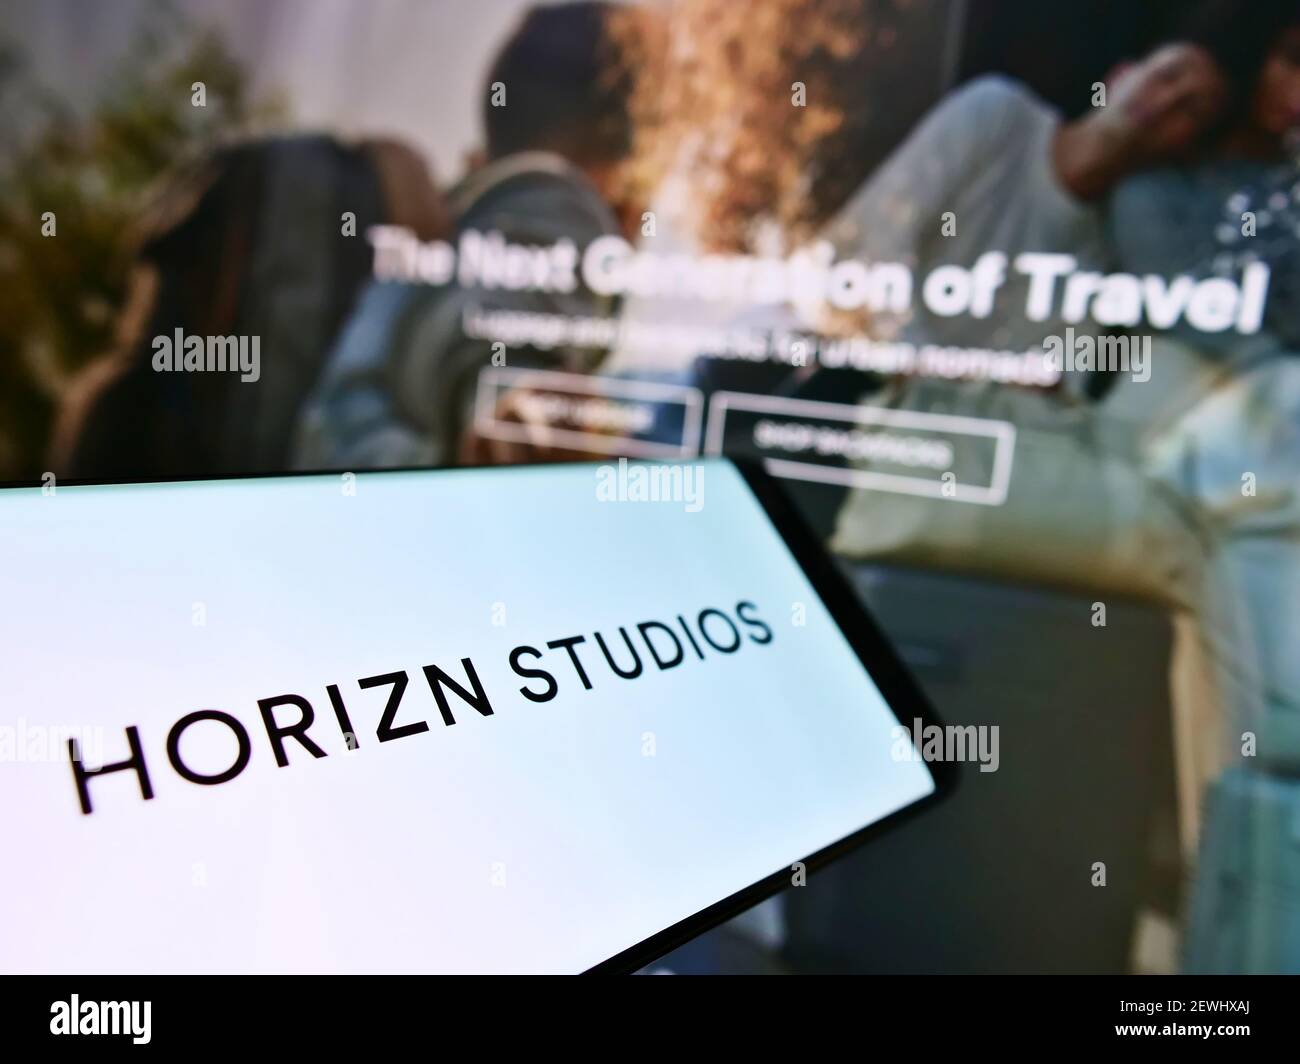 Teléfono móvil con el logotipo de la empresa alemana de equipaje Horizn Studios (HS New Travel GmbH) en la pantalla frente a la página web. Enfoque en el centro de la pantalla del teléfono. Foto de stock